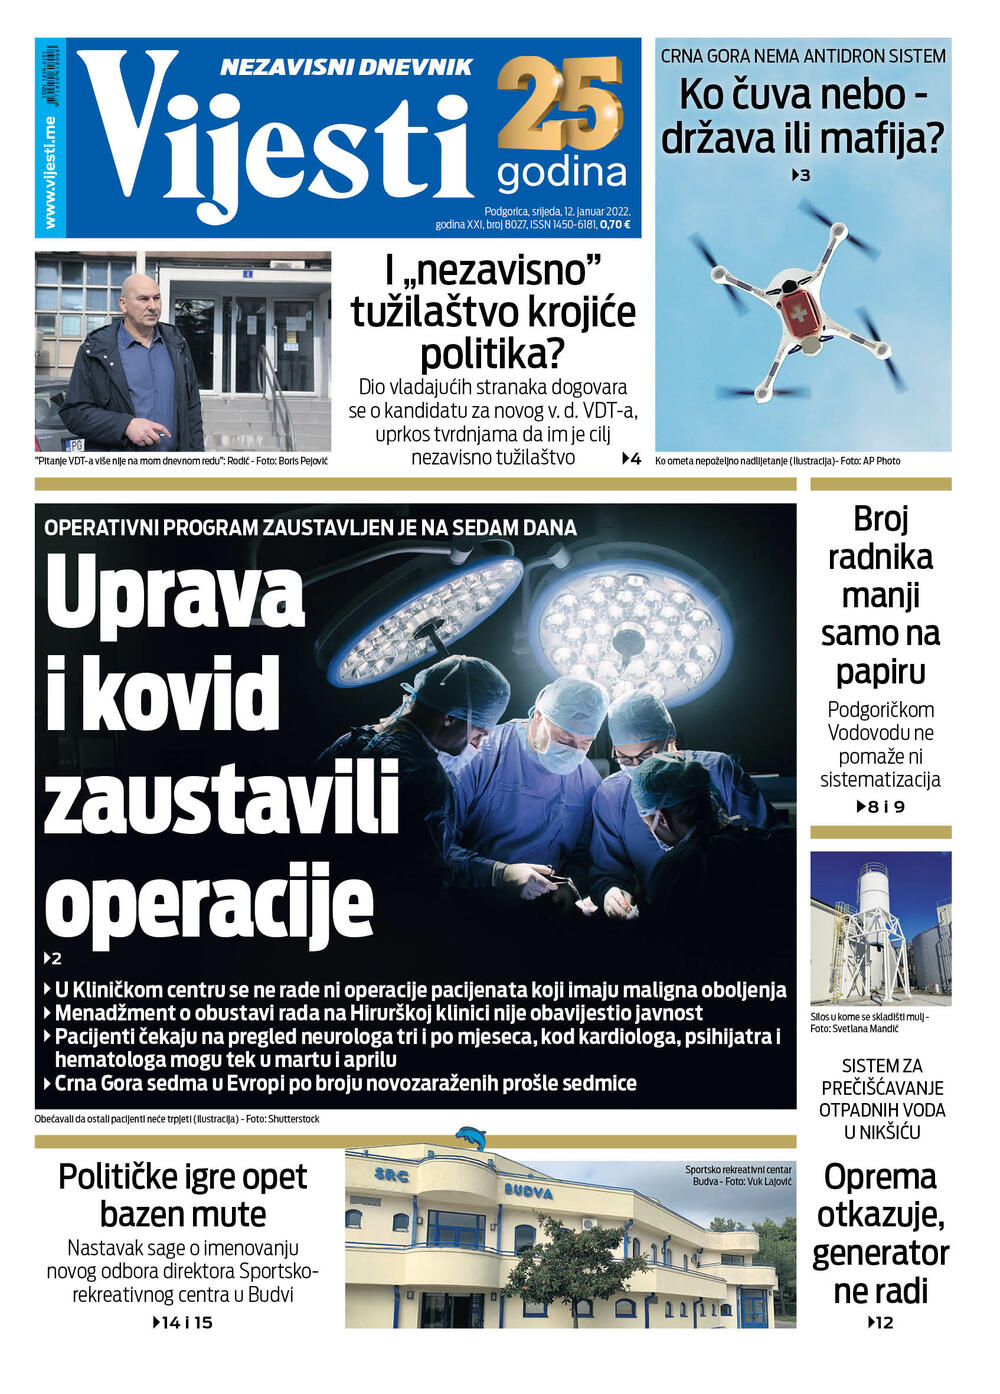 Naslovna strana "Vijesti" za 12.1.2022., Foto: Vijesti